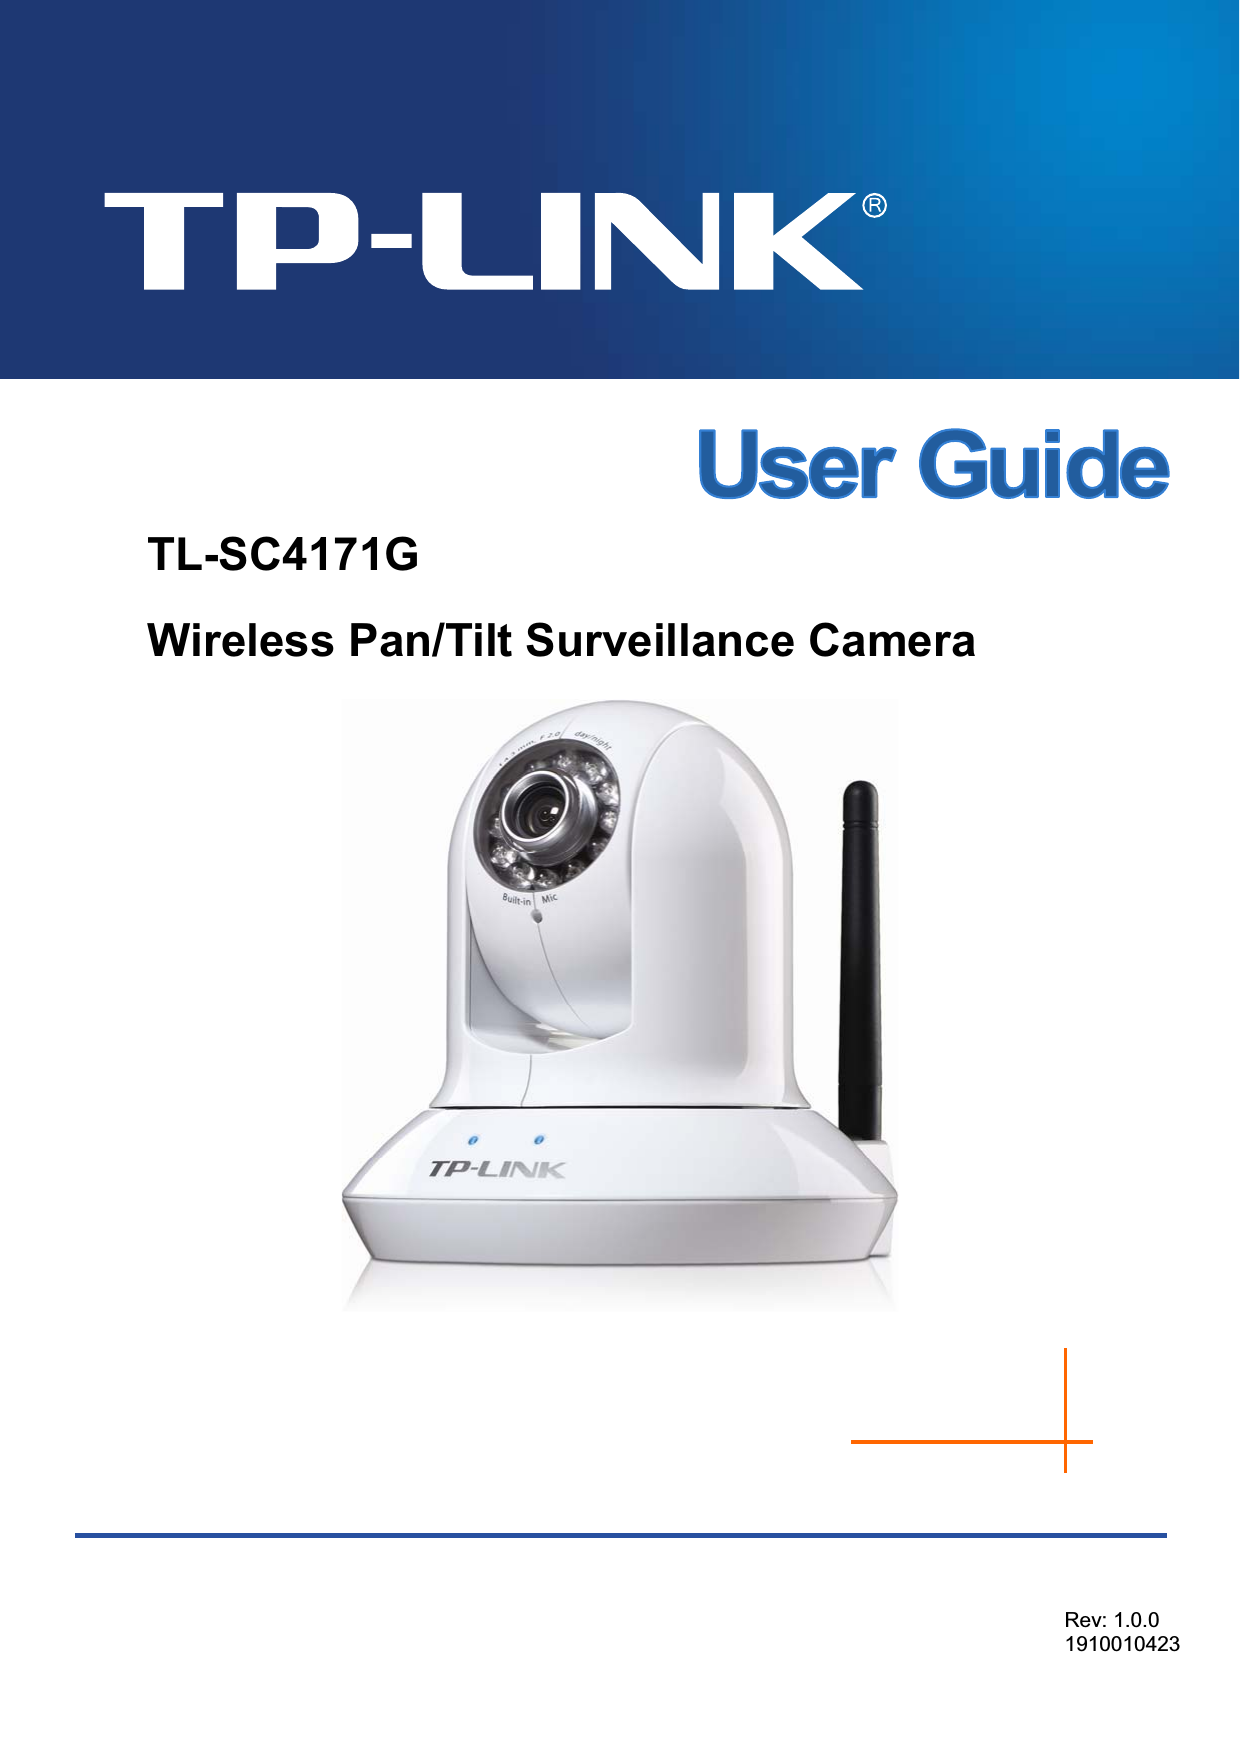  TL-SC4171G Wireless Pan/Tilt Surveillance Camera  Rev: 1.0.0 1910010423  